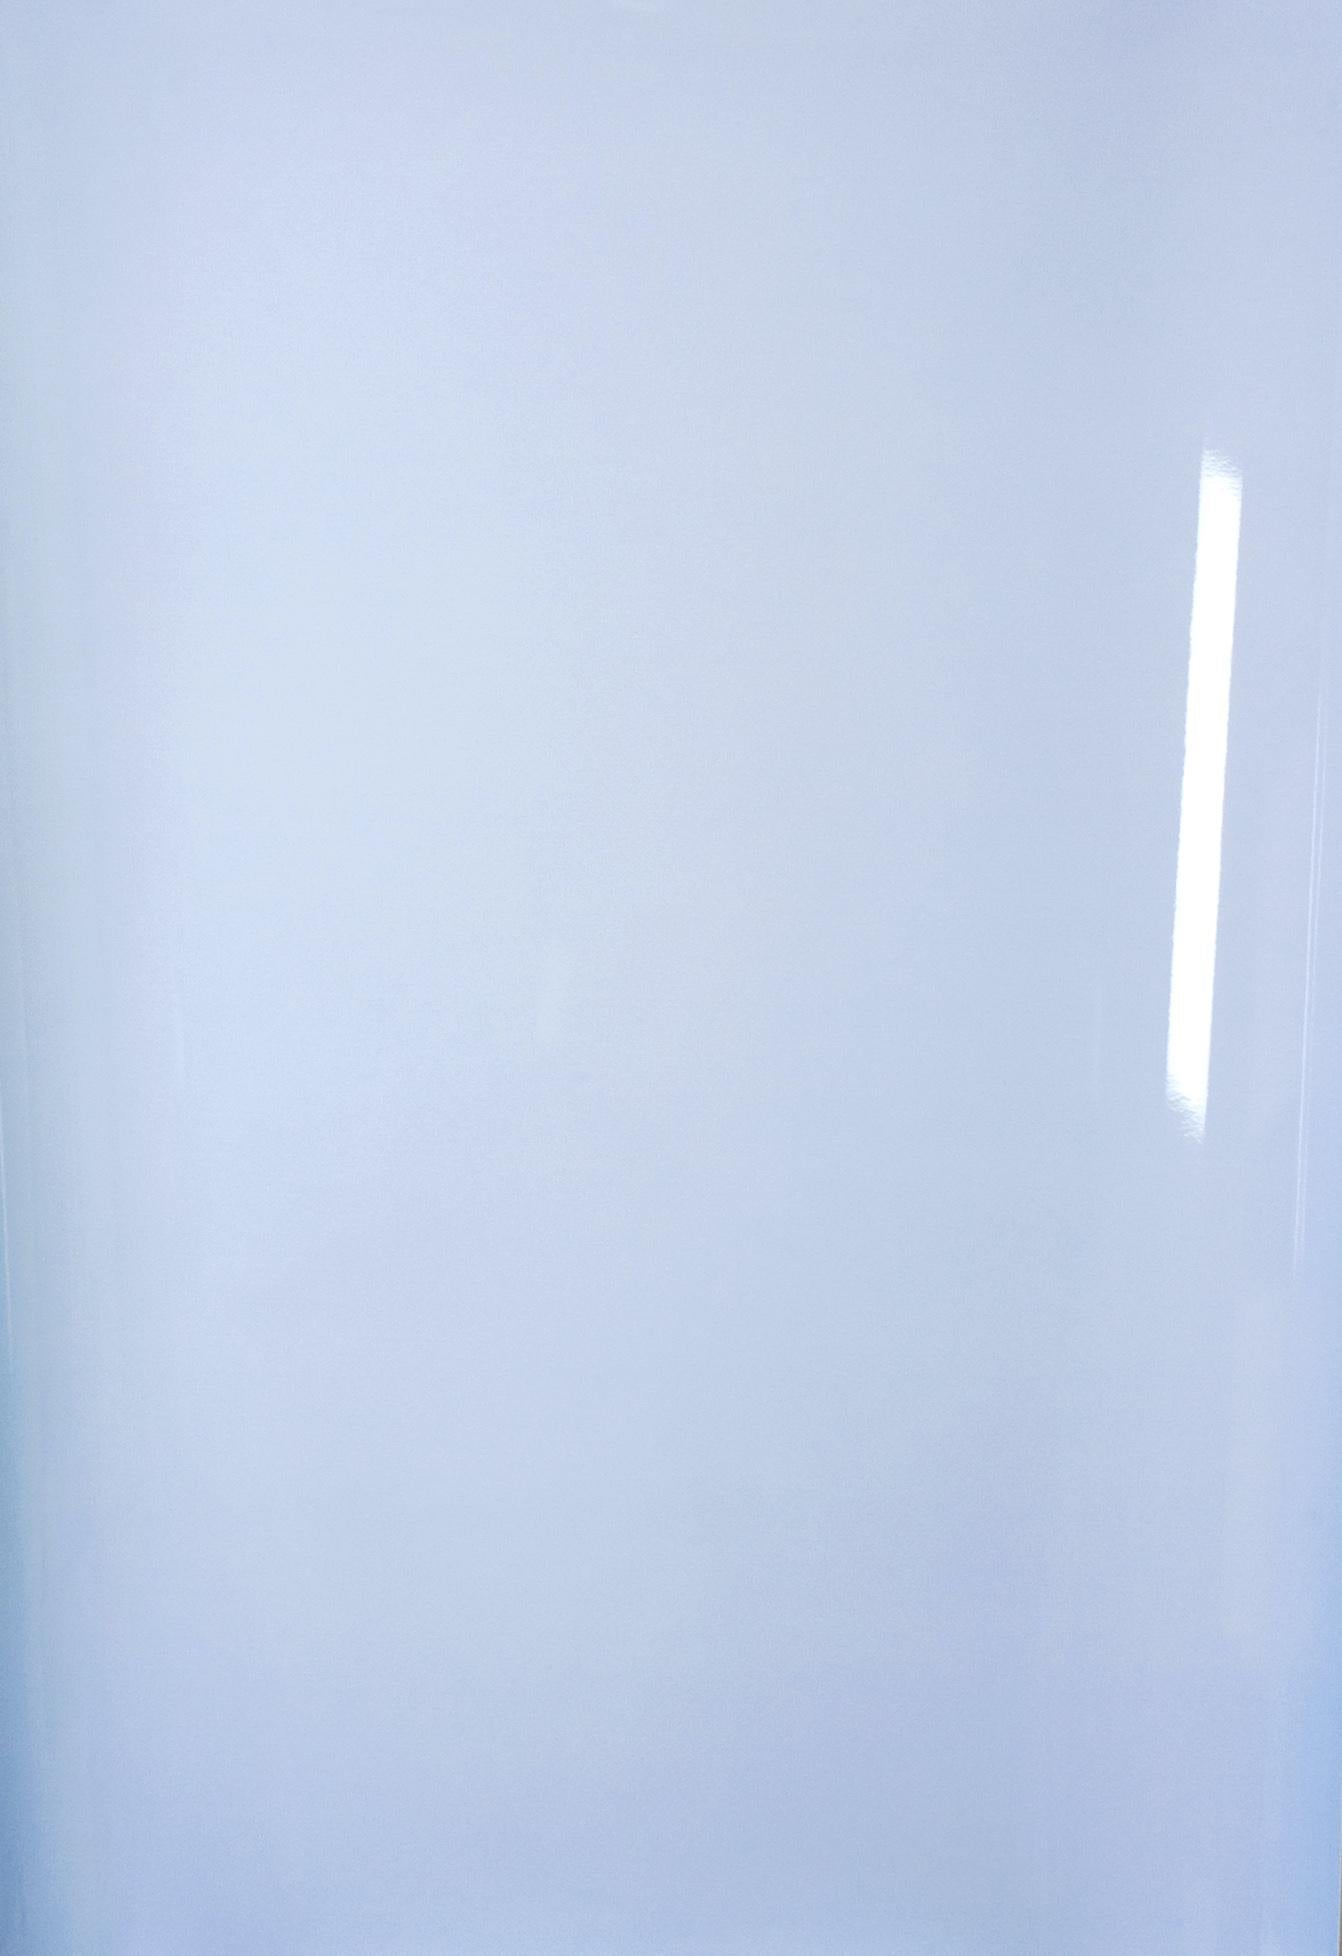 Schatten auf Papier, Nr. 1 – Zeitgenössische abstrakte blaue monochrome Fotografie